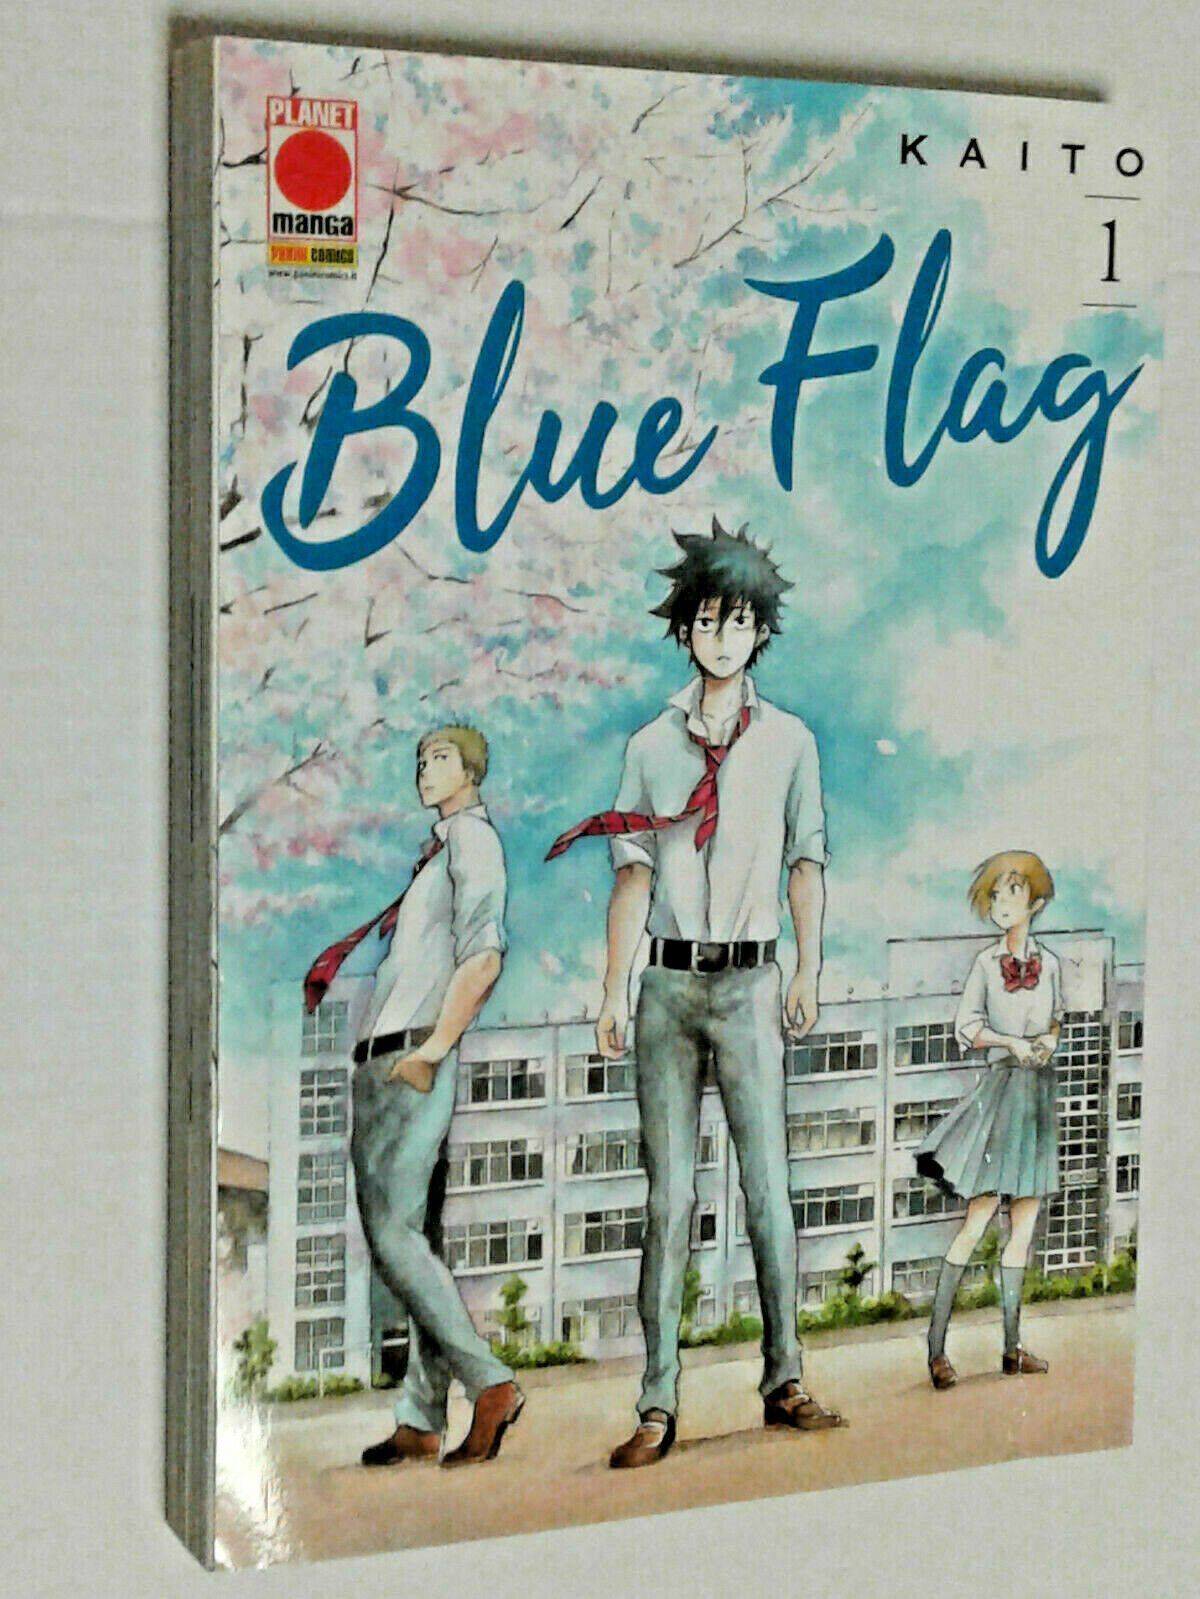 ITALIANO #NSF3 Capolavori Manga Blue Flag N° 2 Planet Manga Panini Comics 